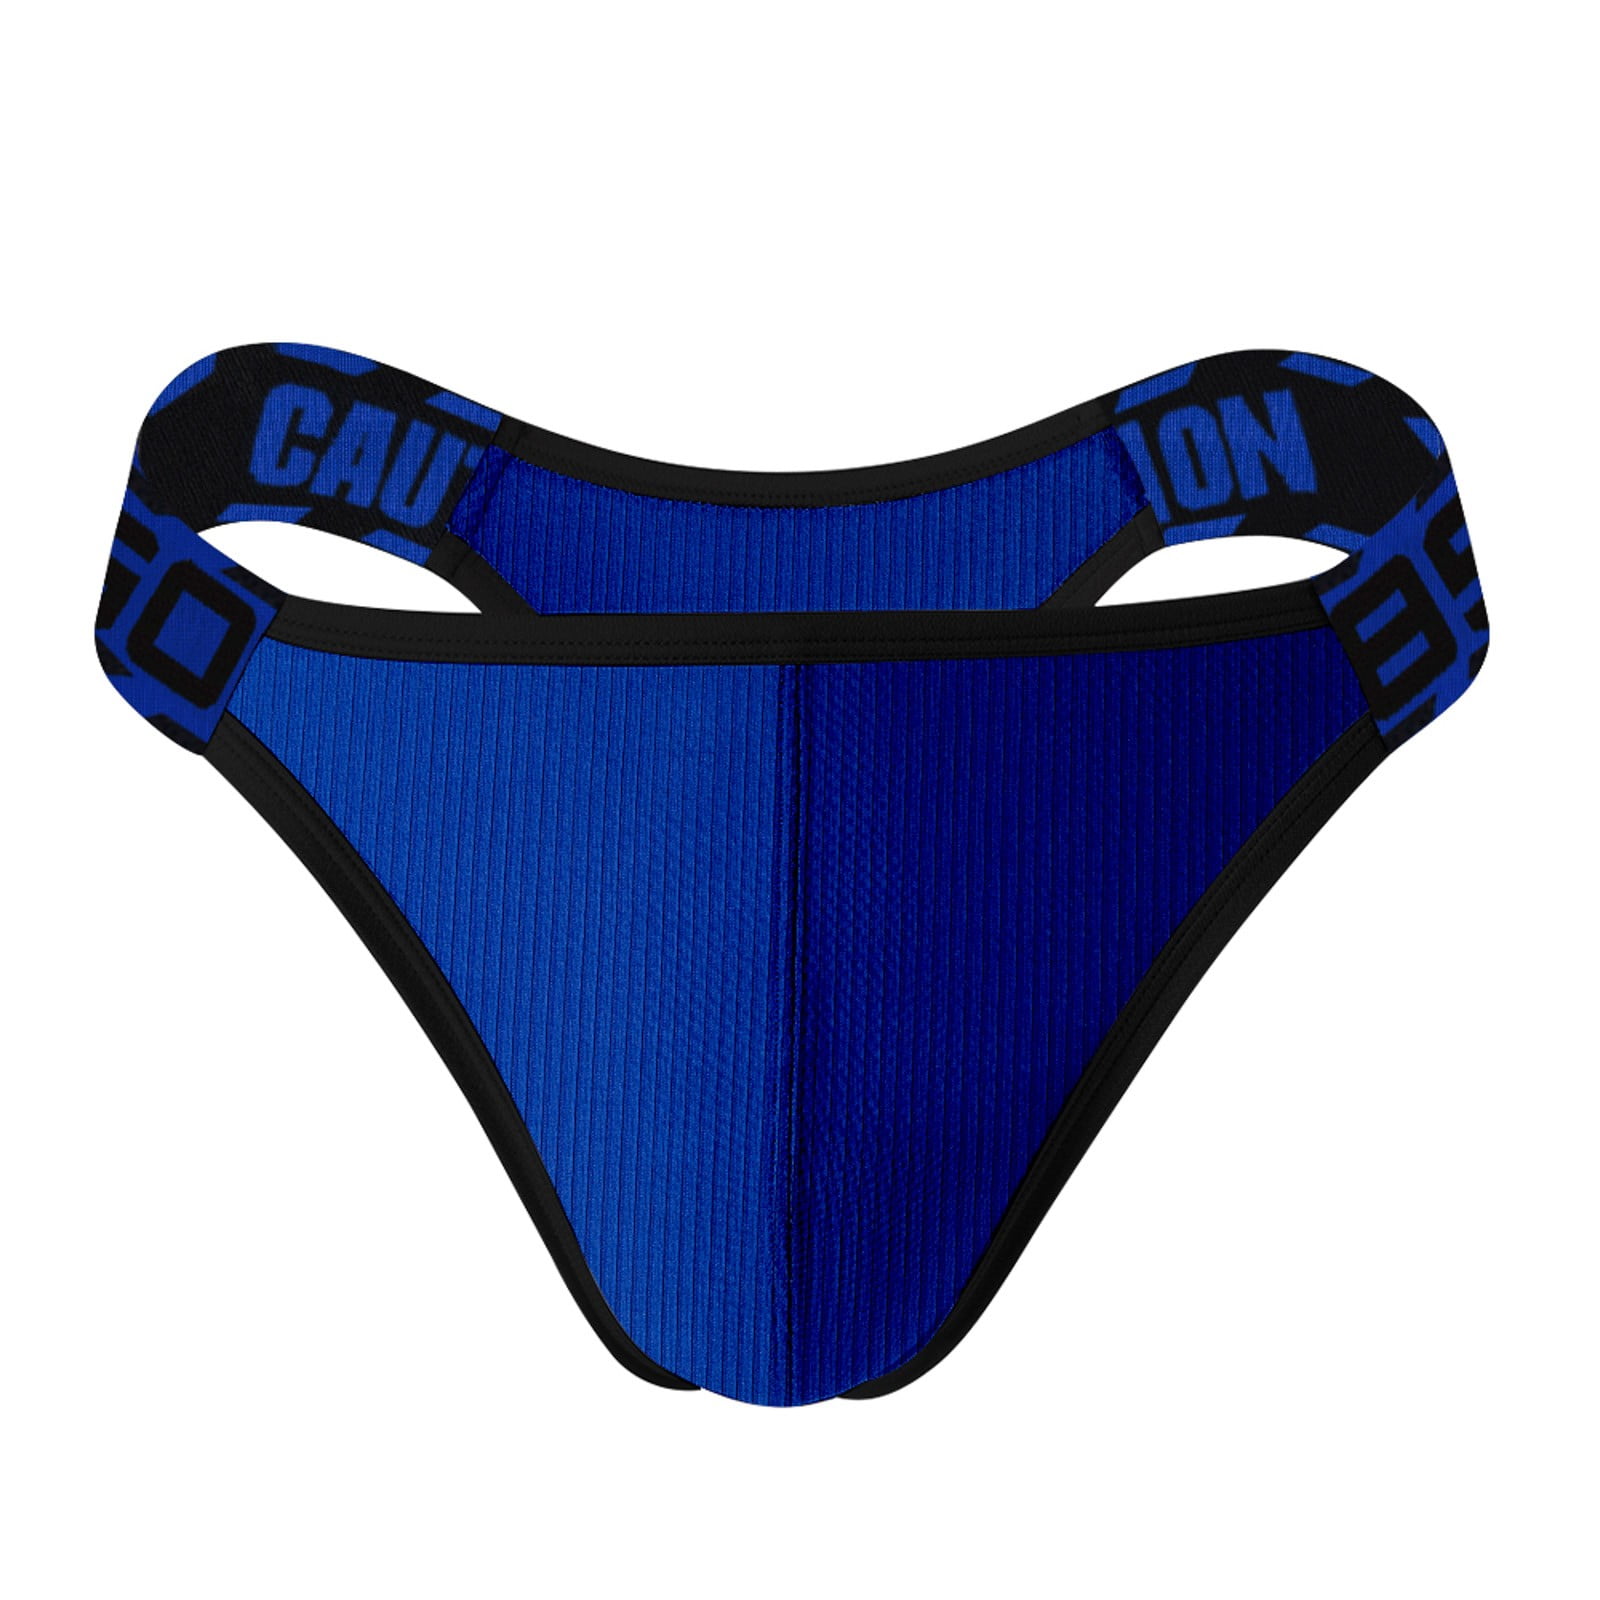 zuwimk Underwear Men,Men's Underwear - Low Rise Briefs with Contour Pouch  Gray,L